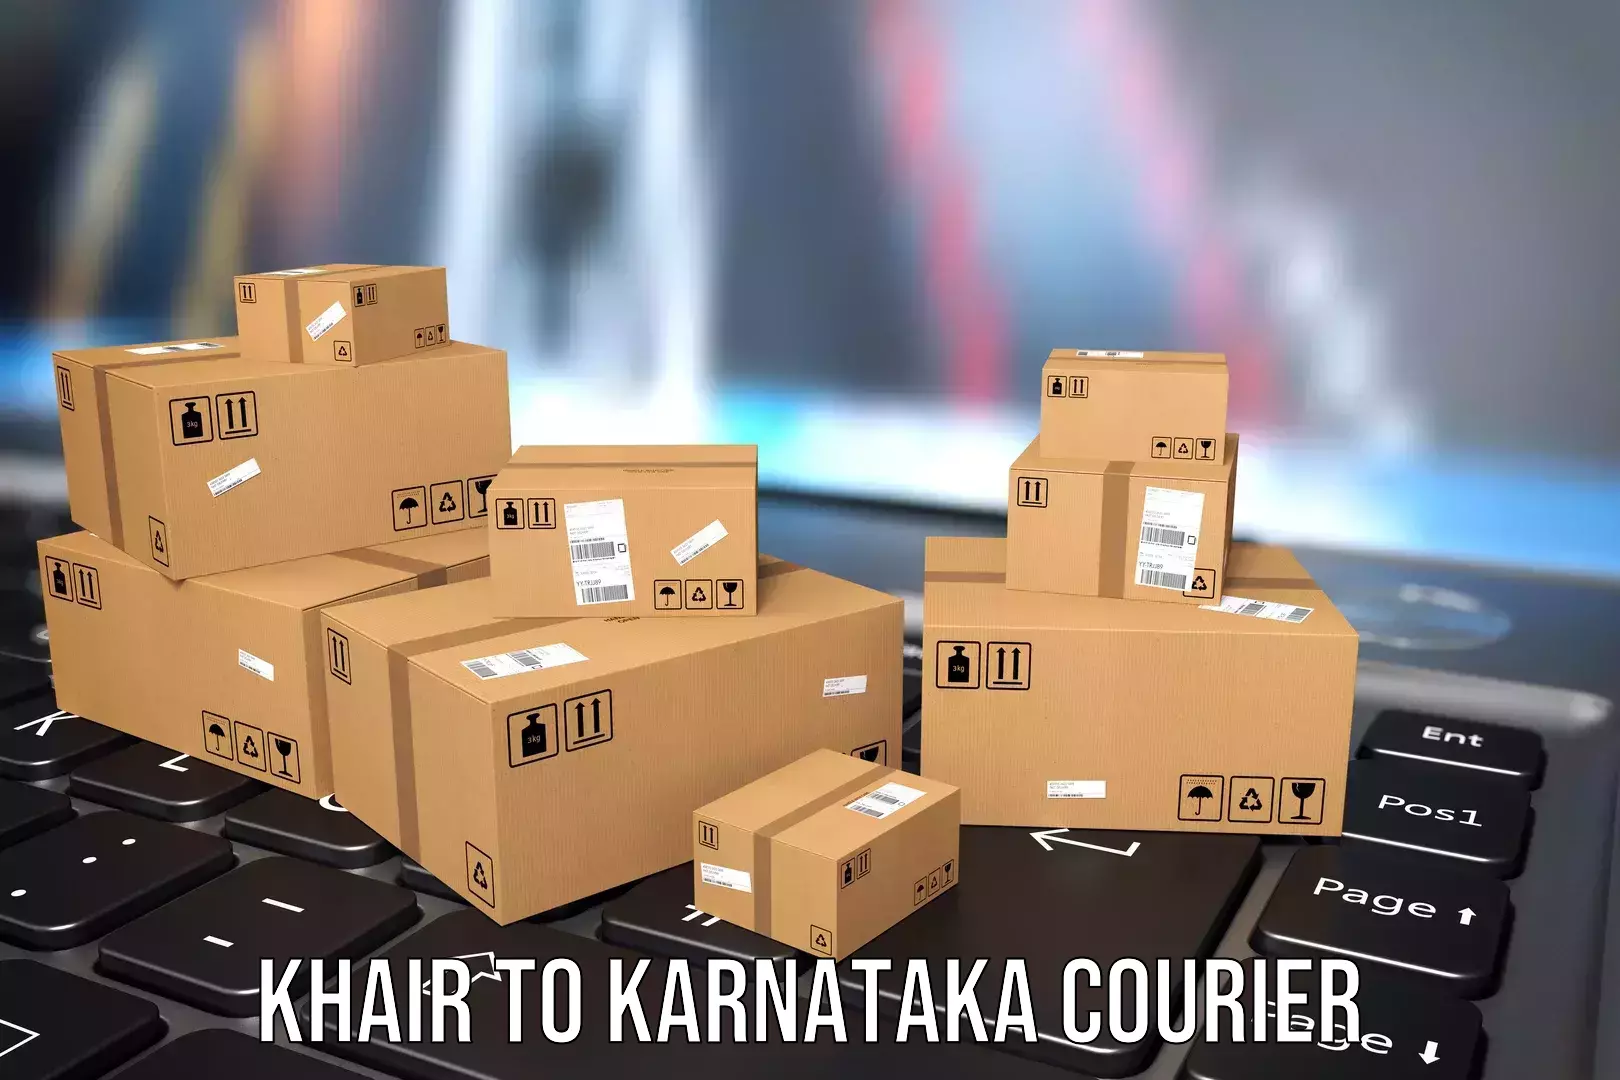 Efficient baggage transport Khair to Karnataka